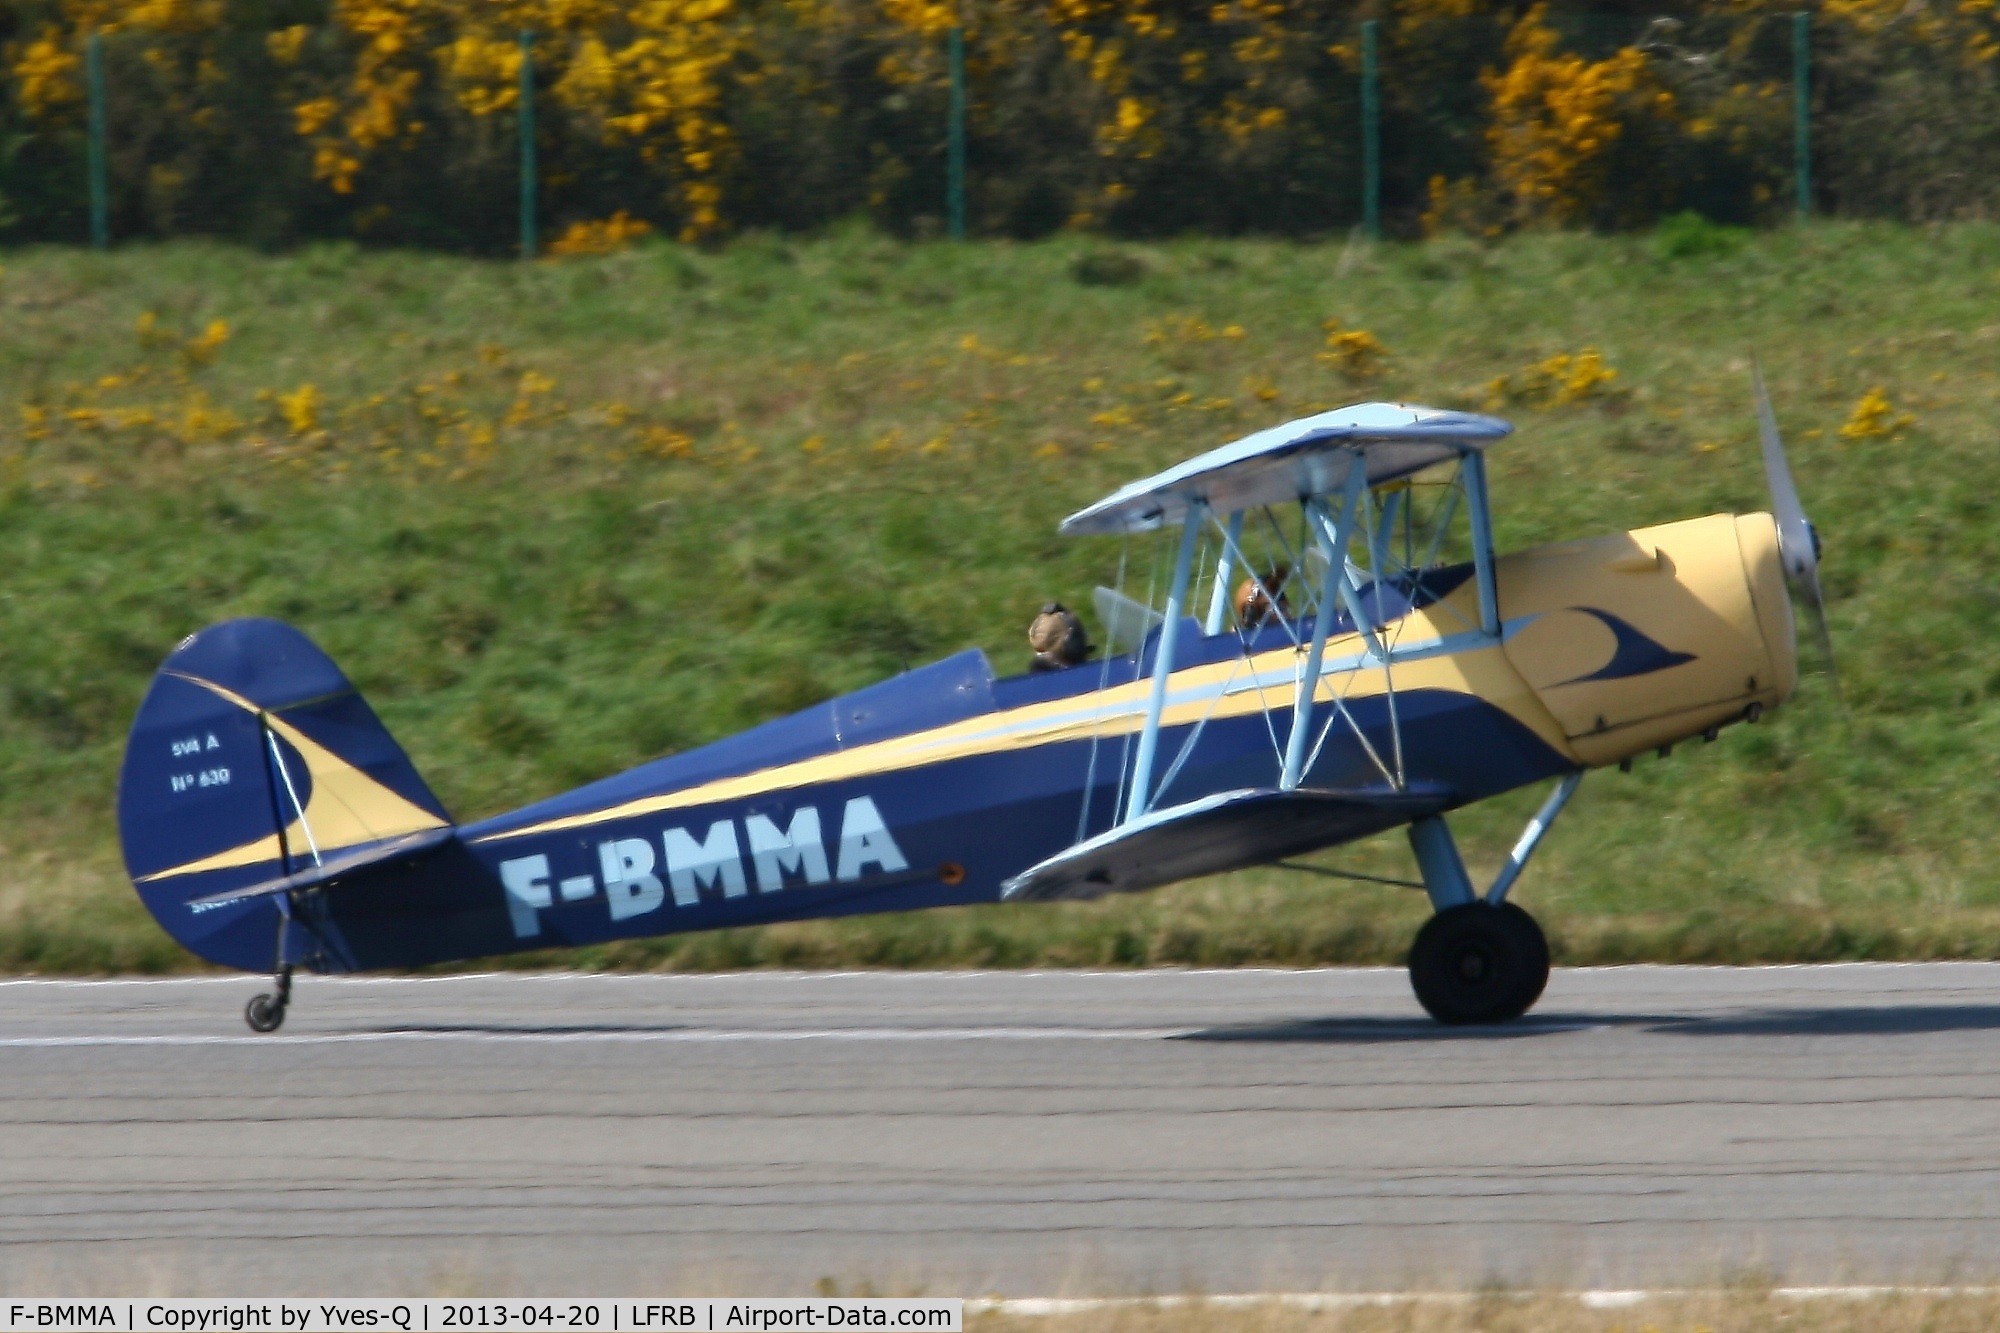 F-BMMA, Stampe-Vertongen SV-4A C/N 630, S.N.C.A.N. STAMPE SV 4A, Landing rwy 07R, Brest-Guipavas Airport (LFRB-BES)